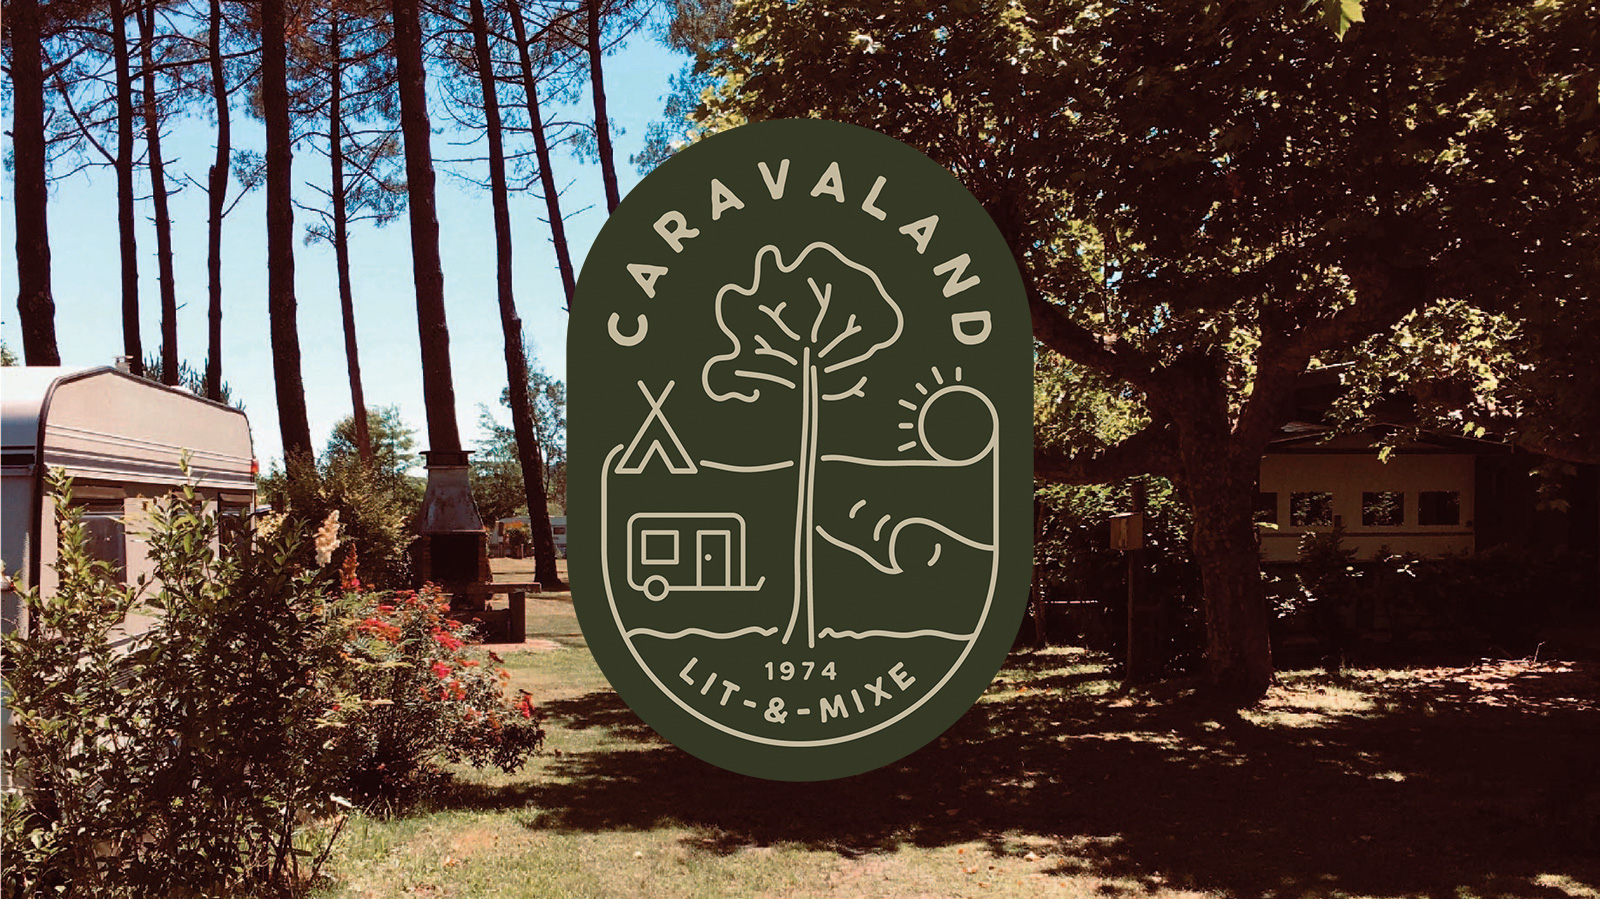 Camping Caravaland